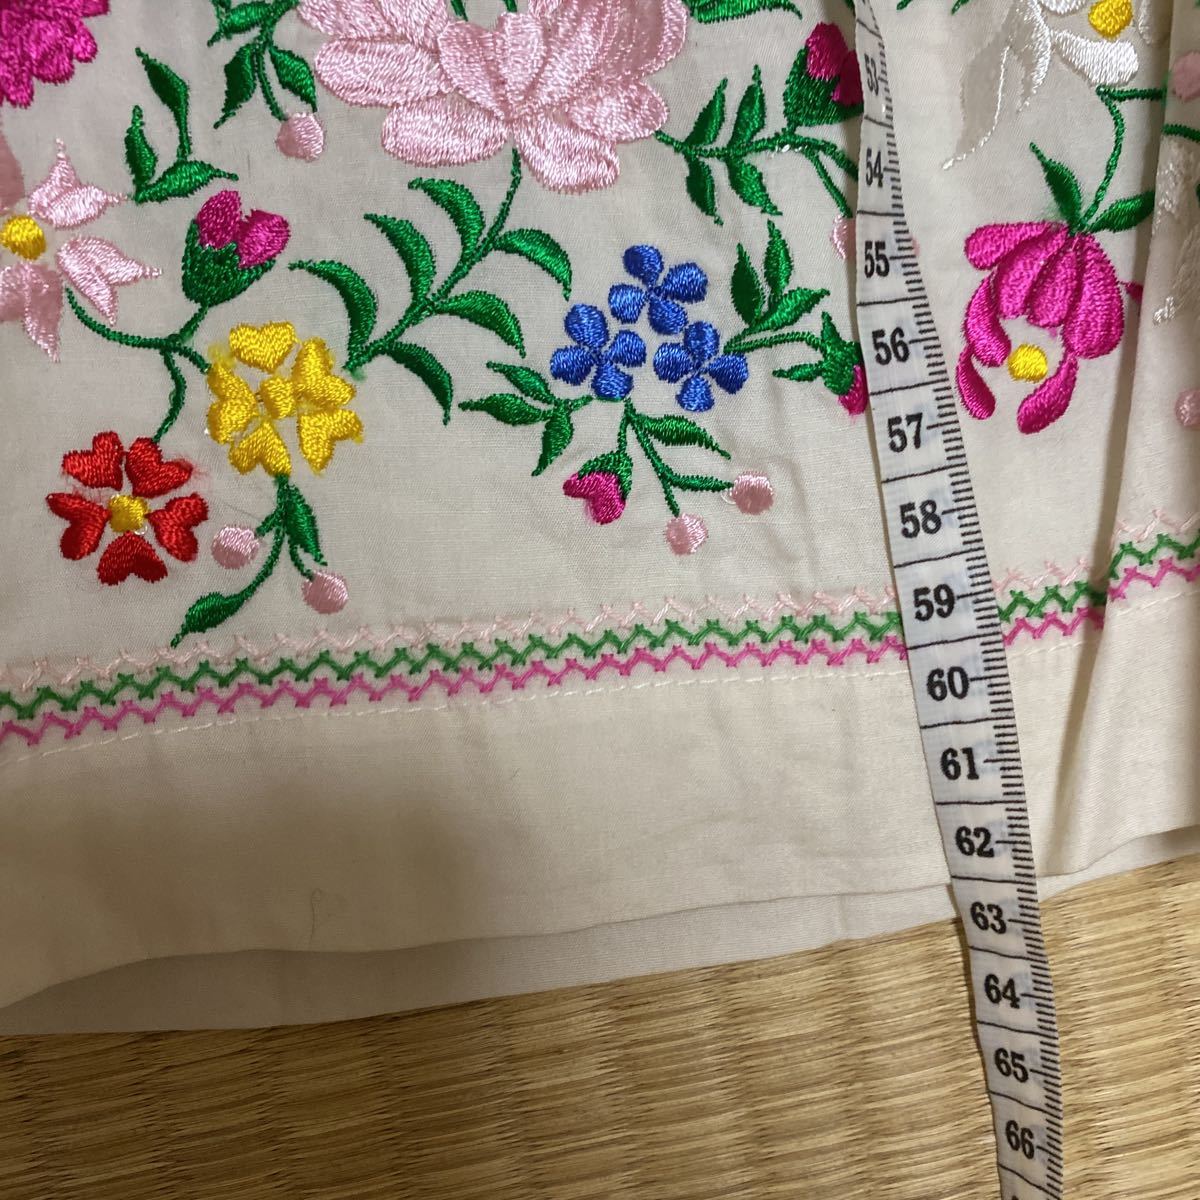 COCUE Cocue юбка колени длина бренд Юго-Восточная Азия Вьетнам мода хлопок вышивка цветочный принт бежевый 